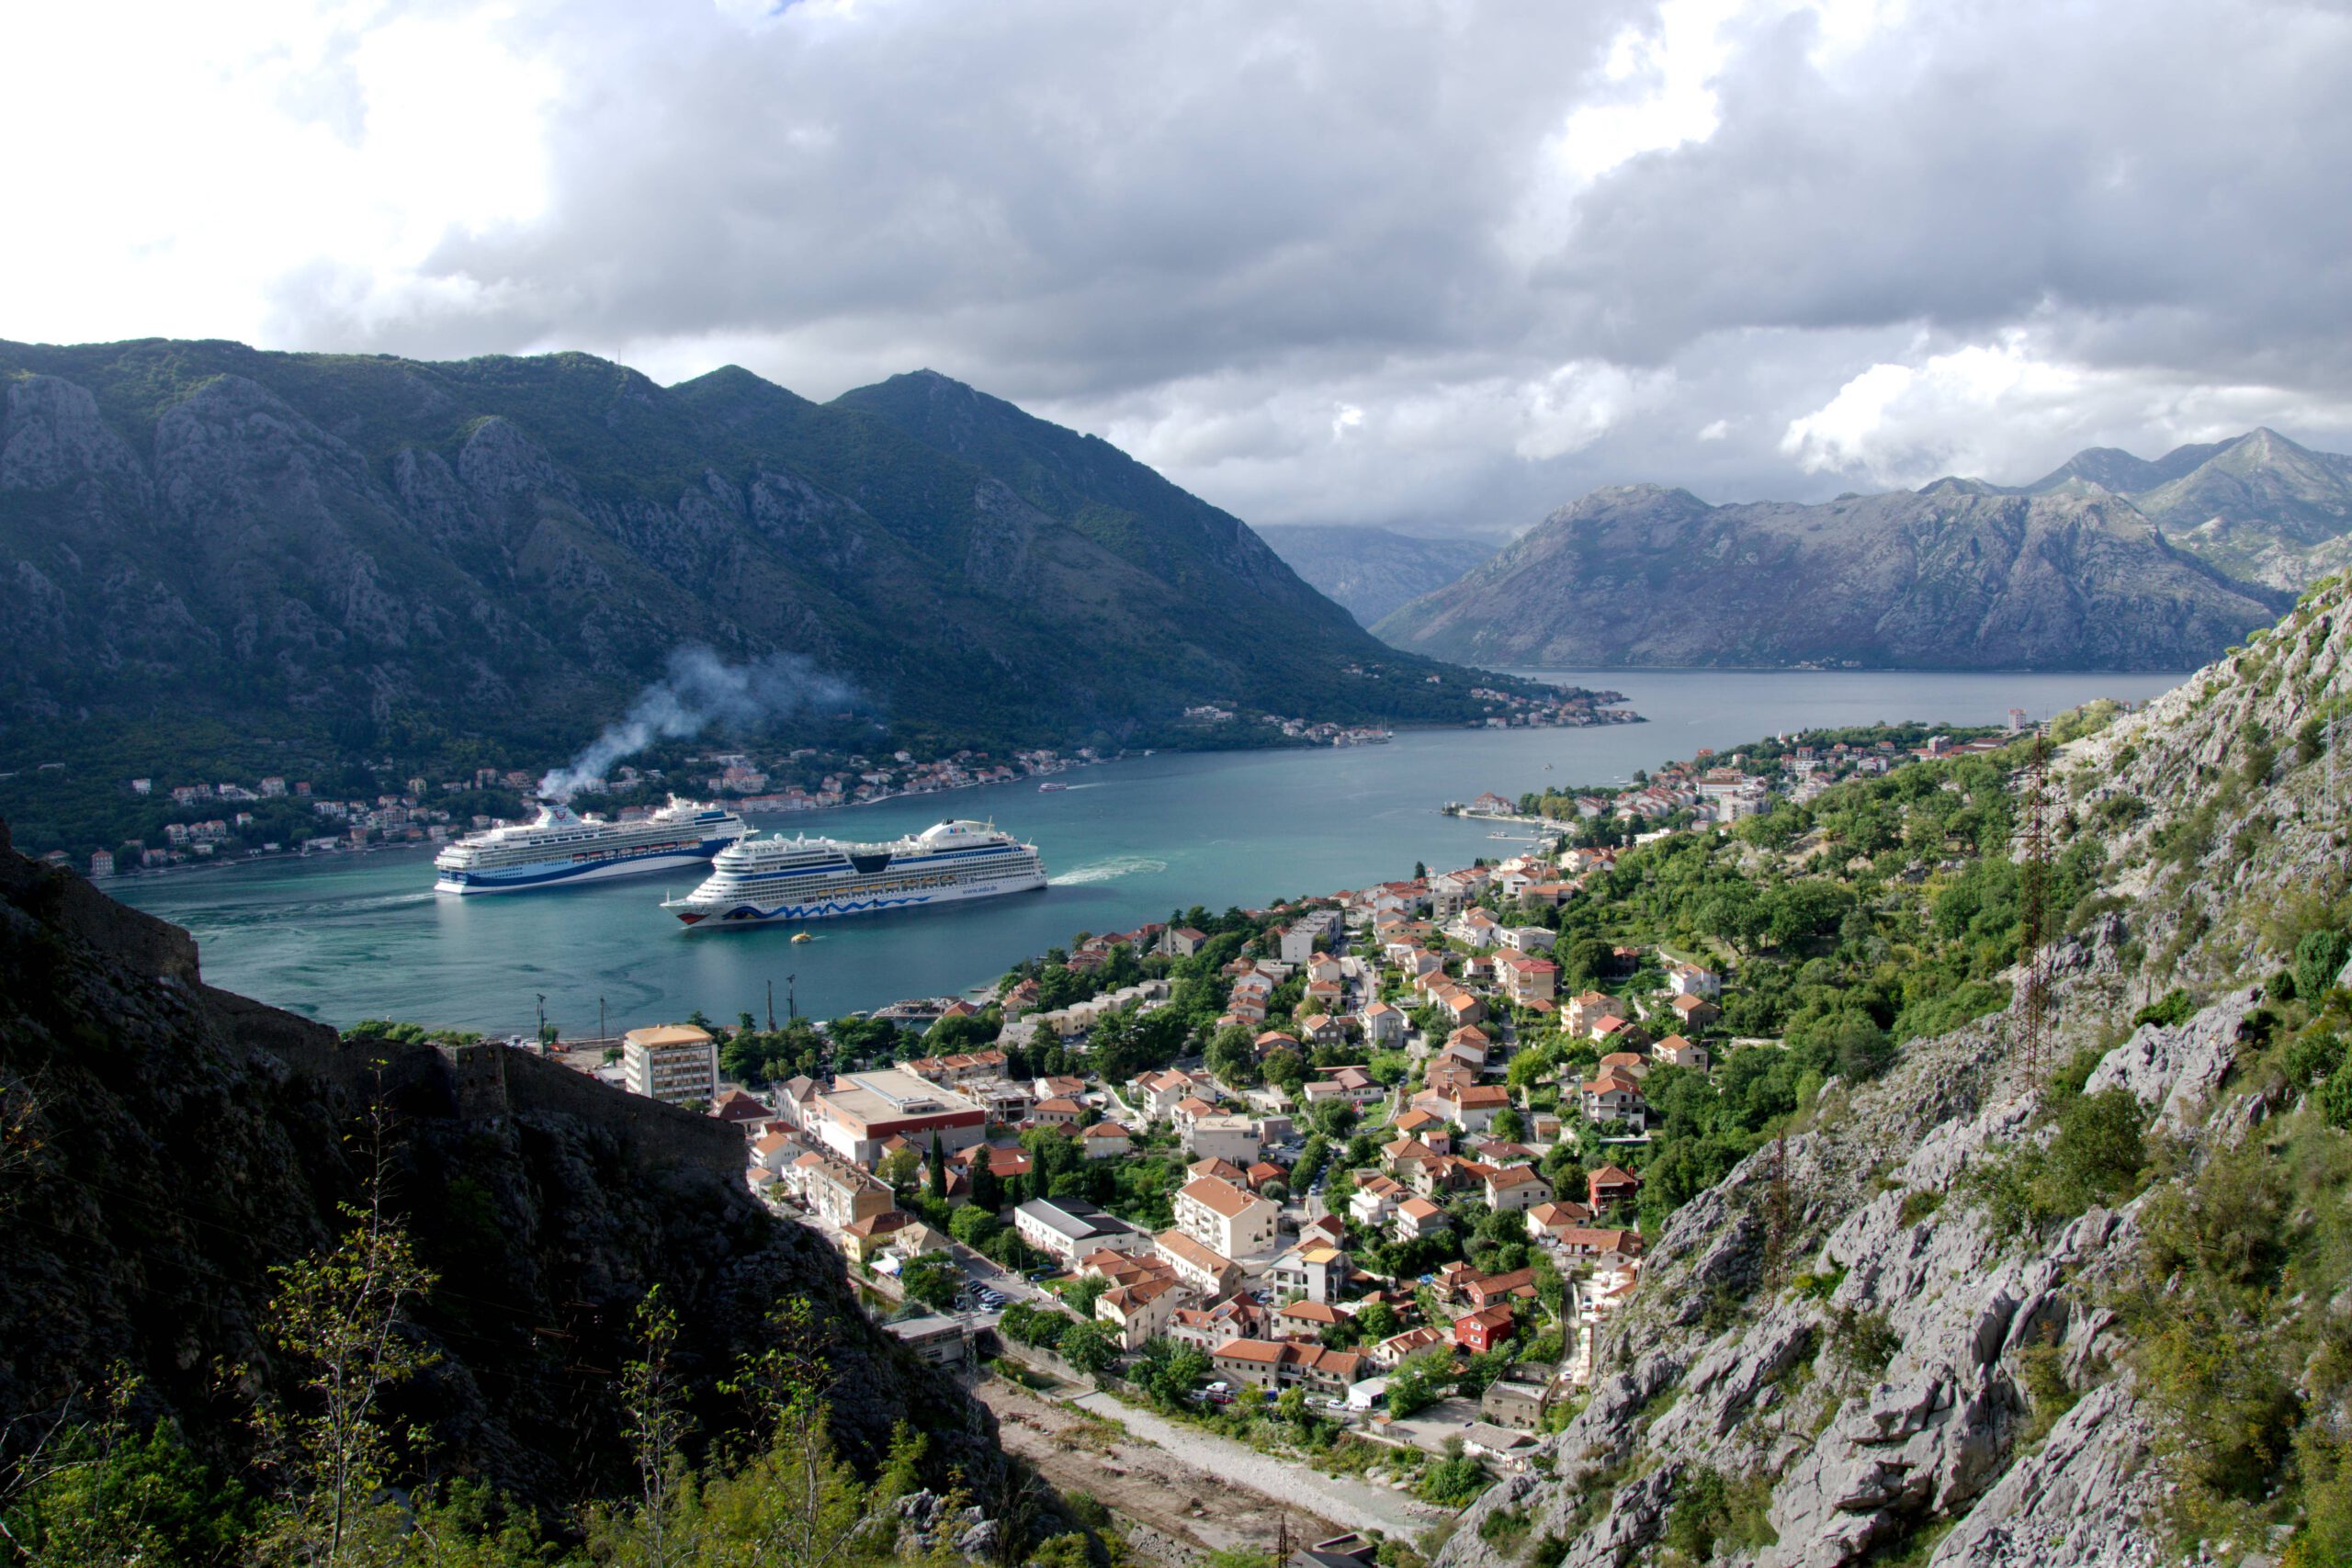 Blick auf die Bucht von Kotor mit zwei Kreuzfahrtschiffen